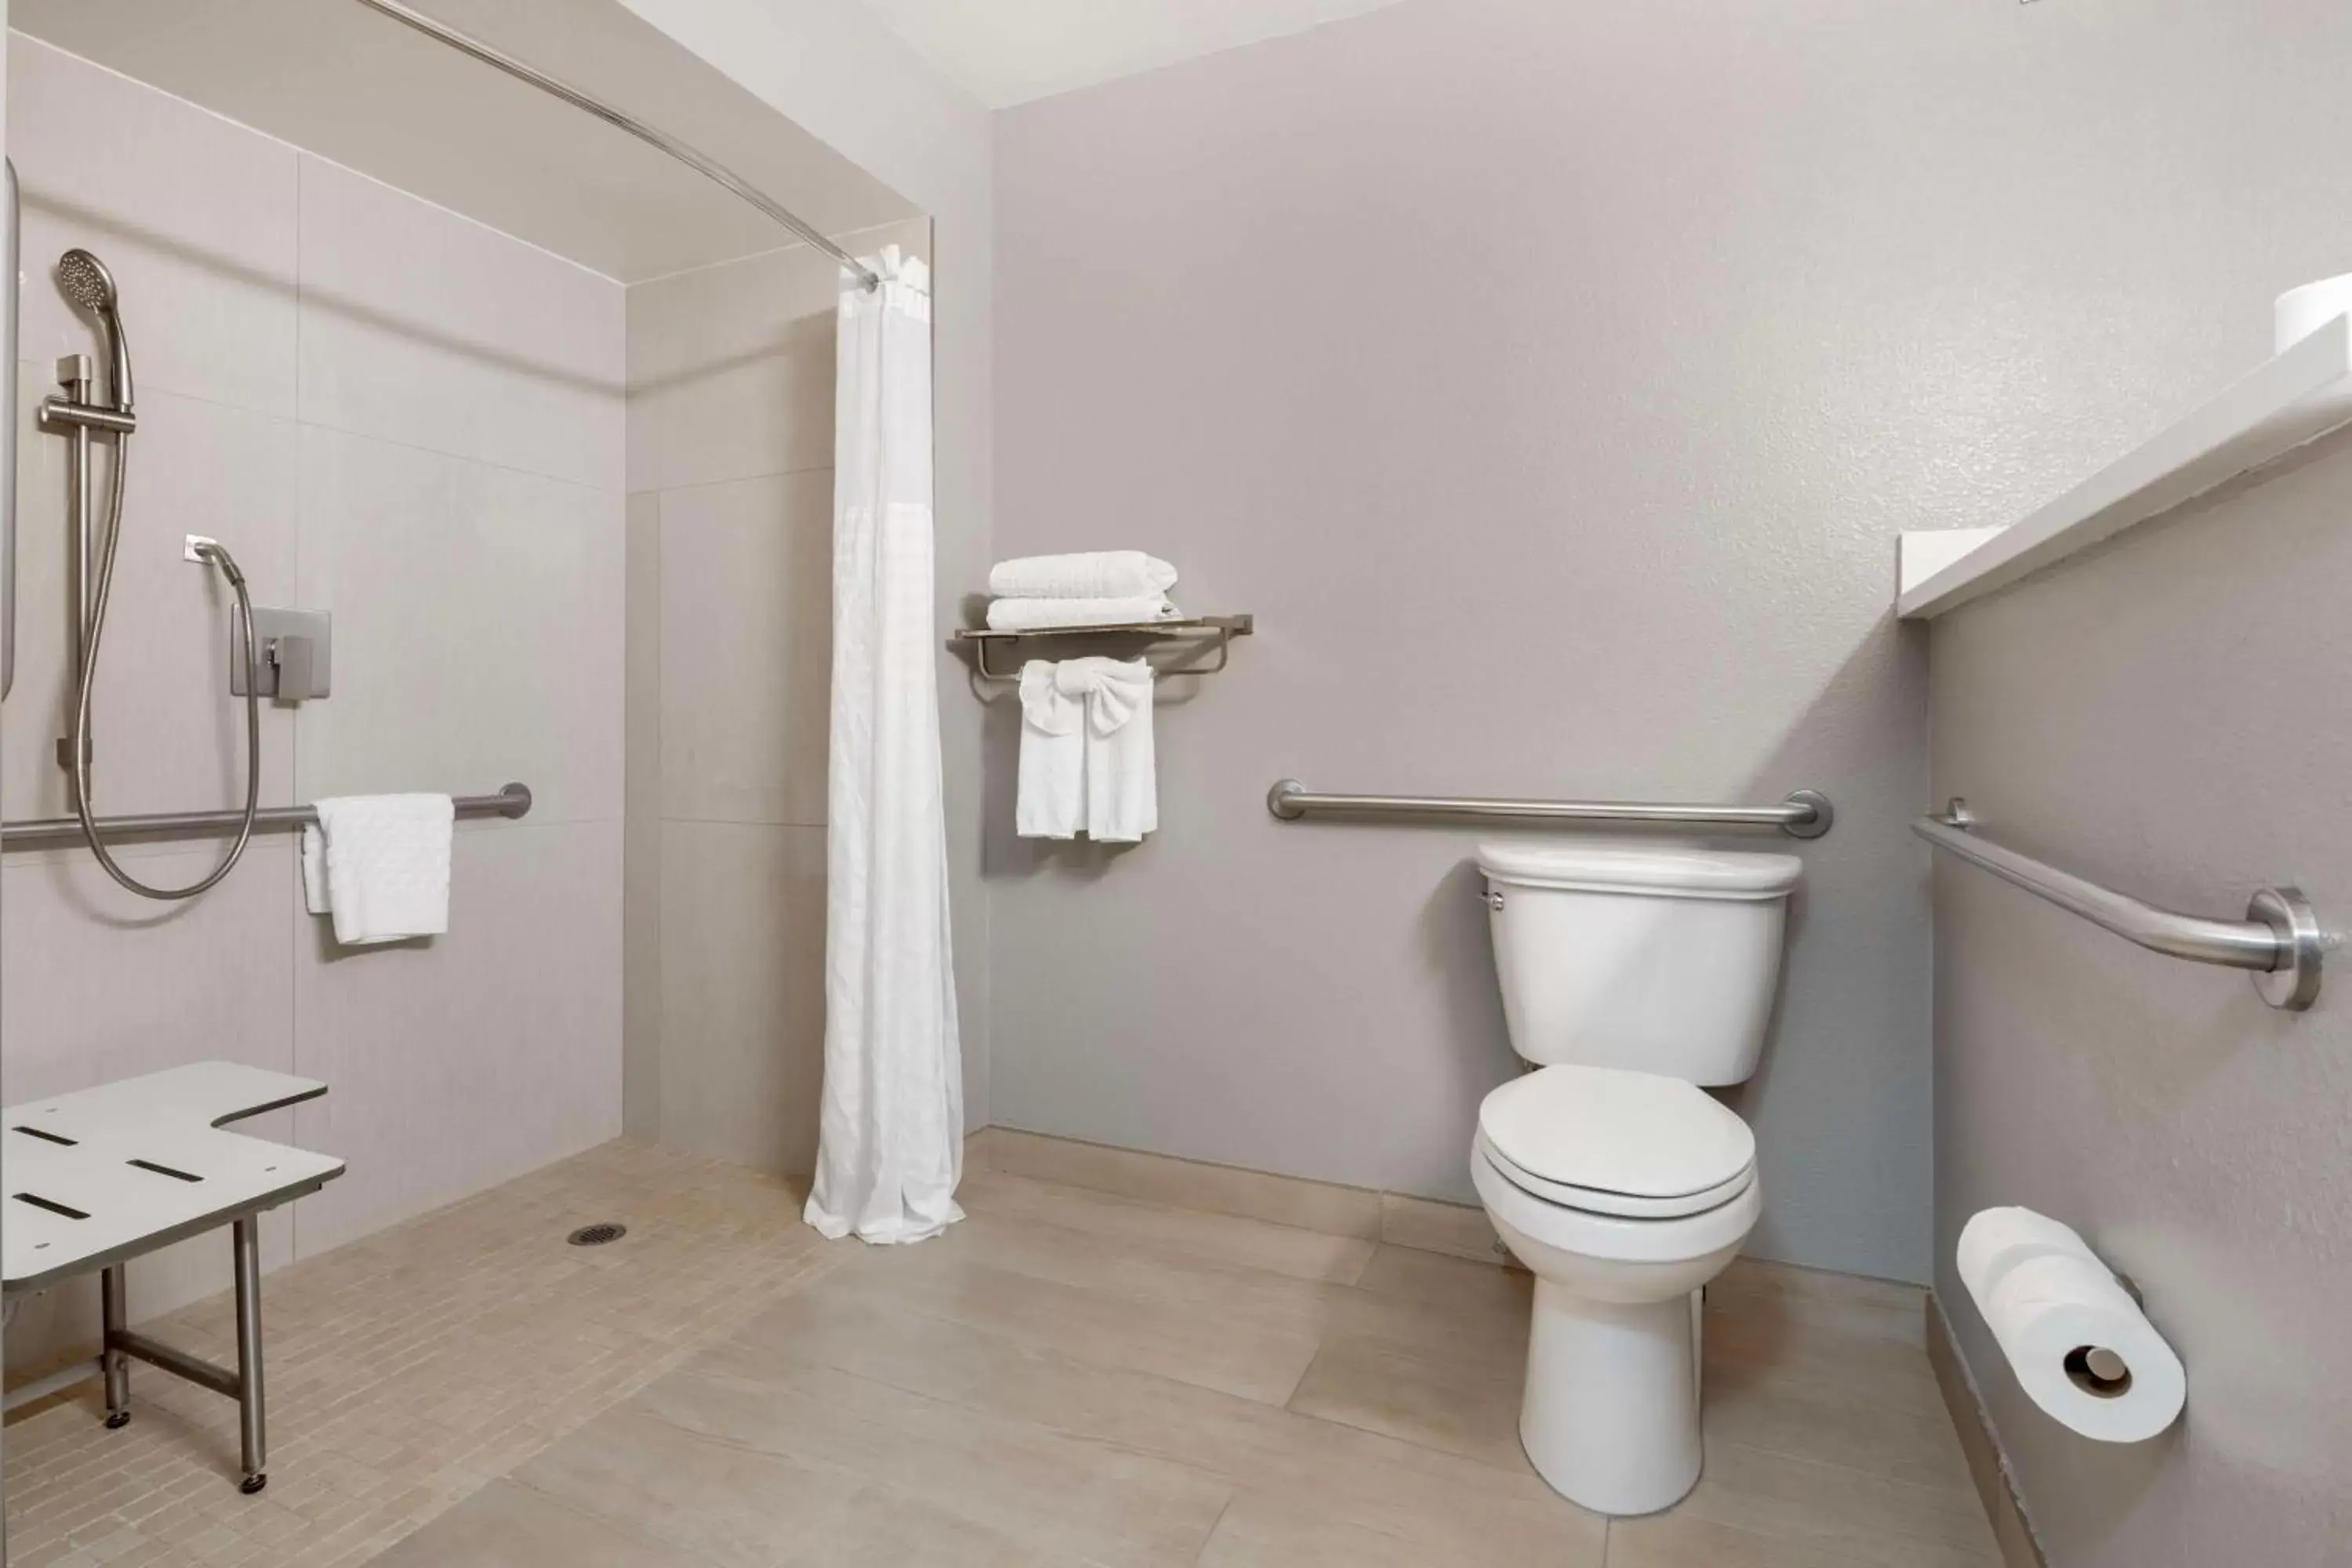 Bedroom, Bathroom in Best Western Plus Sparks-Reno Hotel